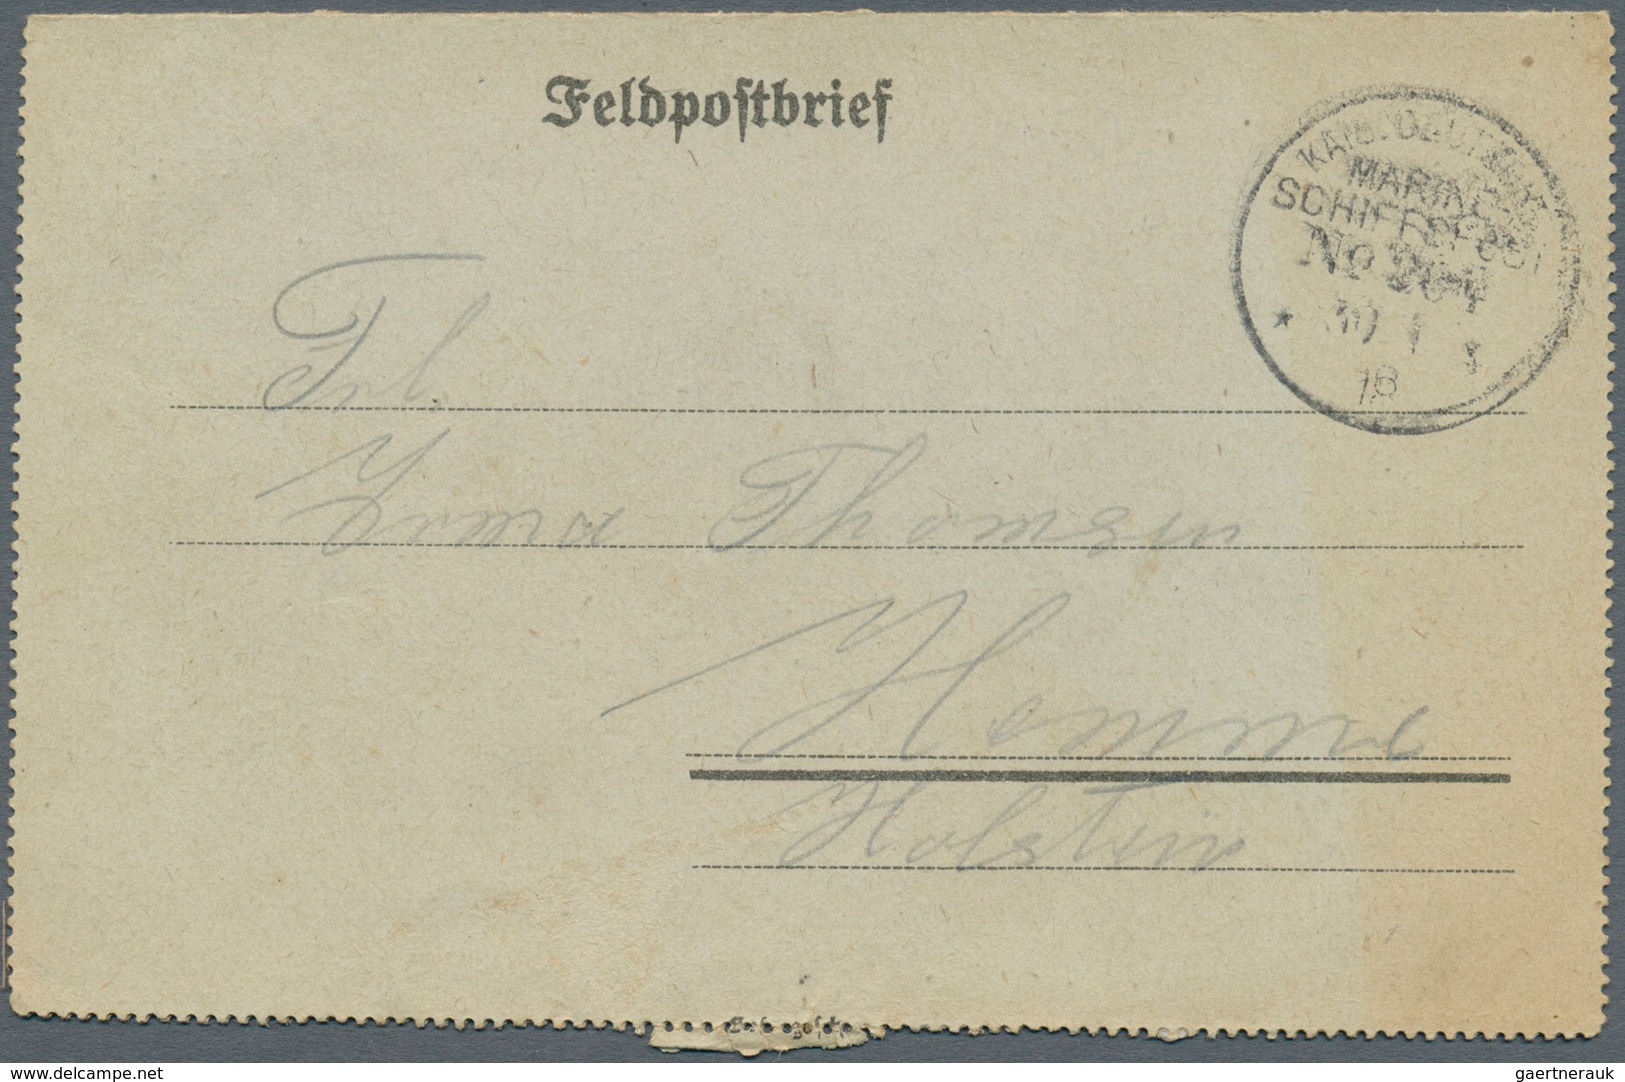 24856 Deutsche Schiffspost - Marine: 1890/1918, Partie von ca. 90 Belegen aus den verschiedensten Regionen